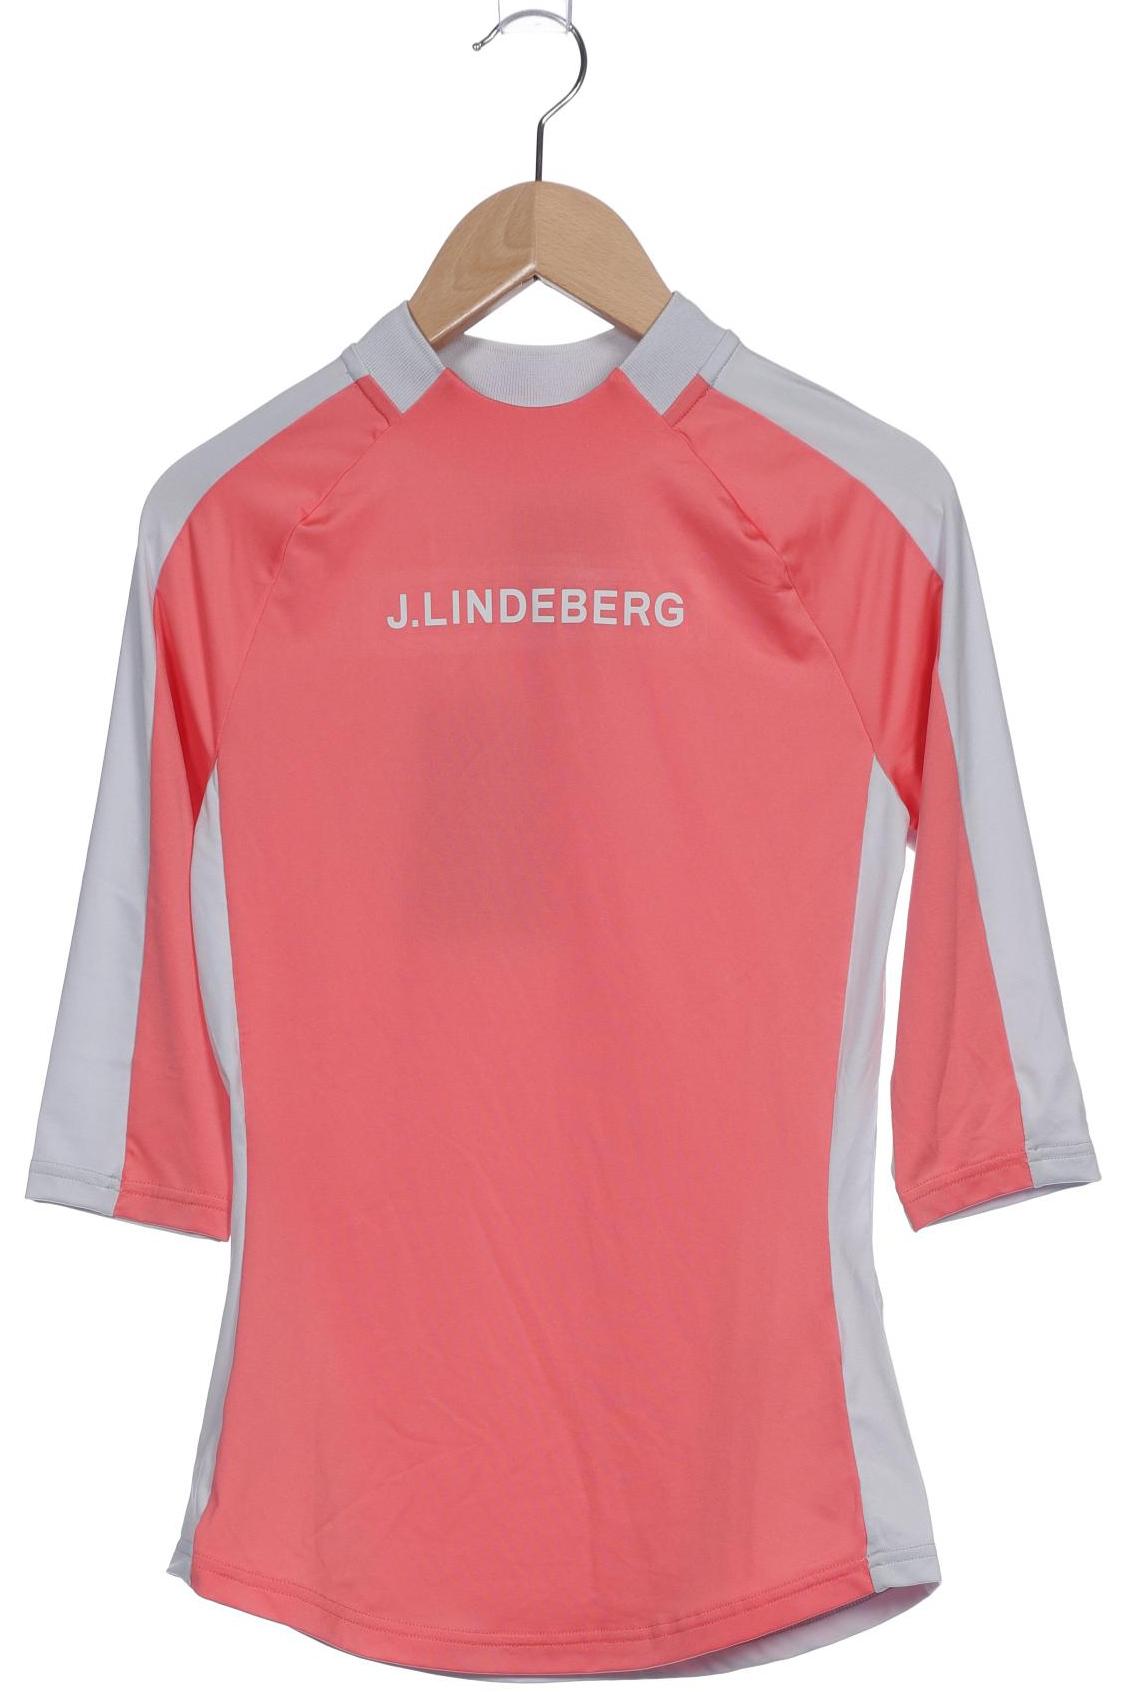 J.LINDEBERG Damen Langarmshirt, pink von J.LINDEBERG